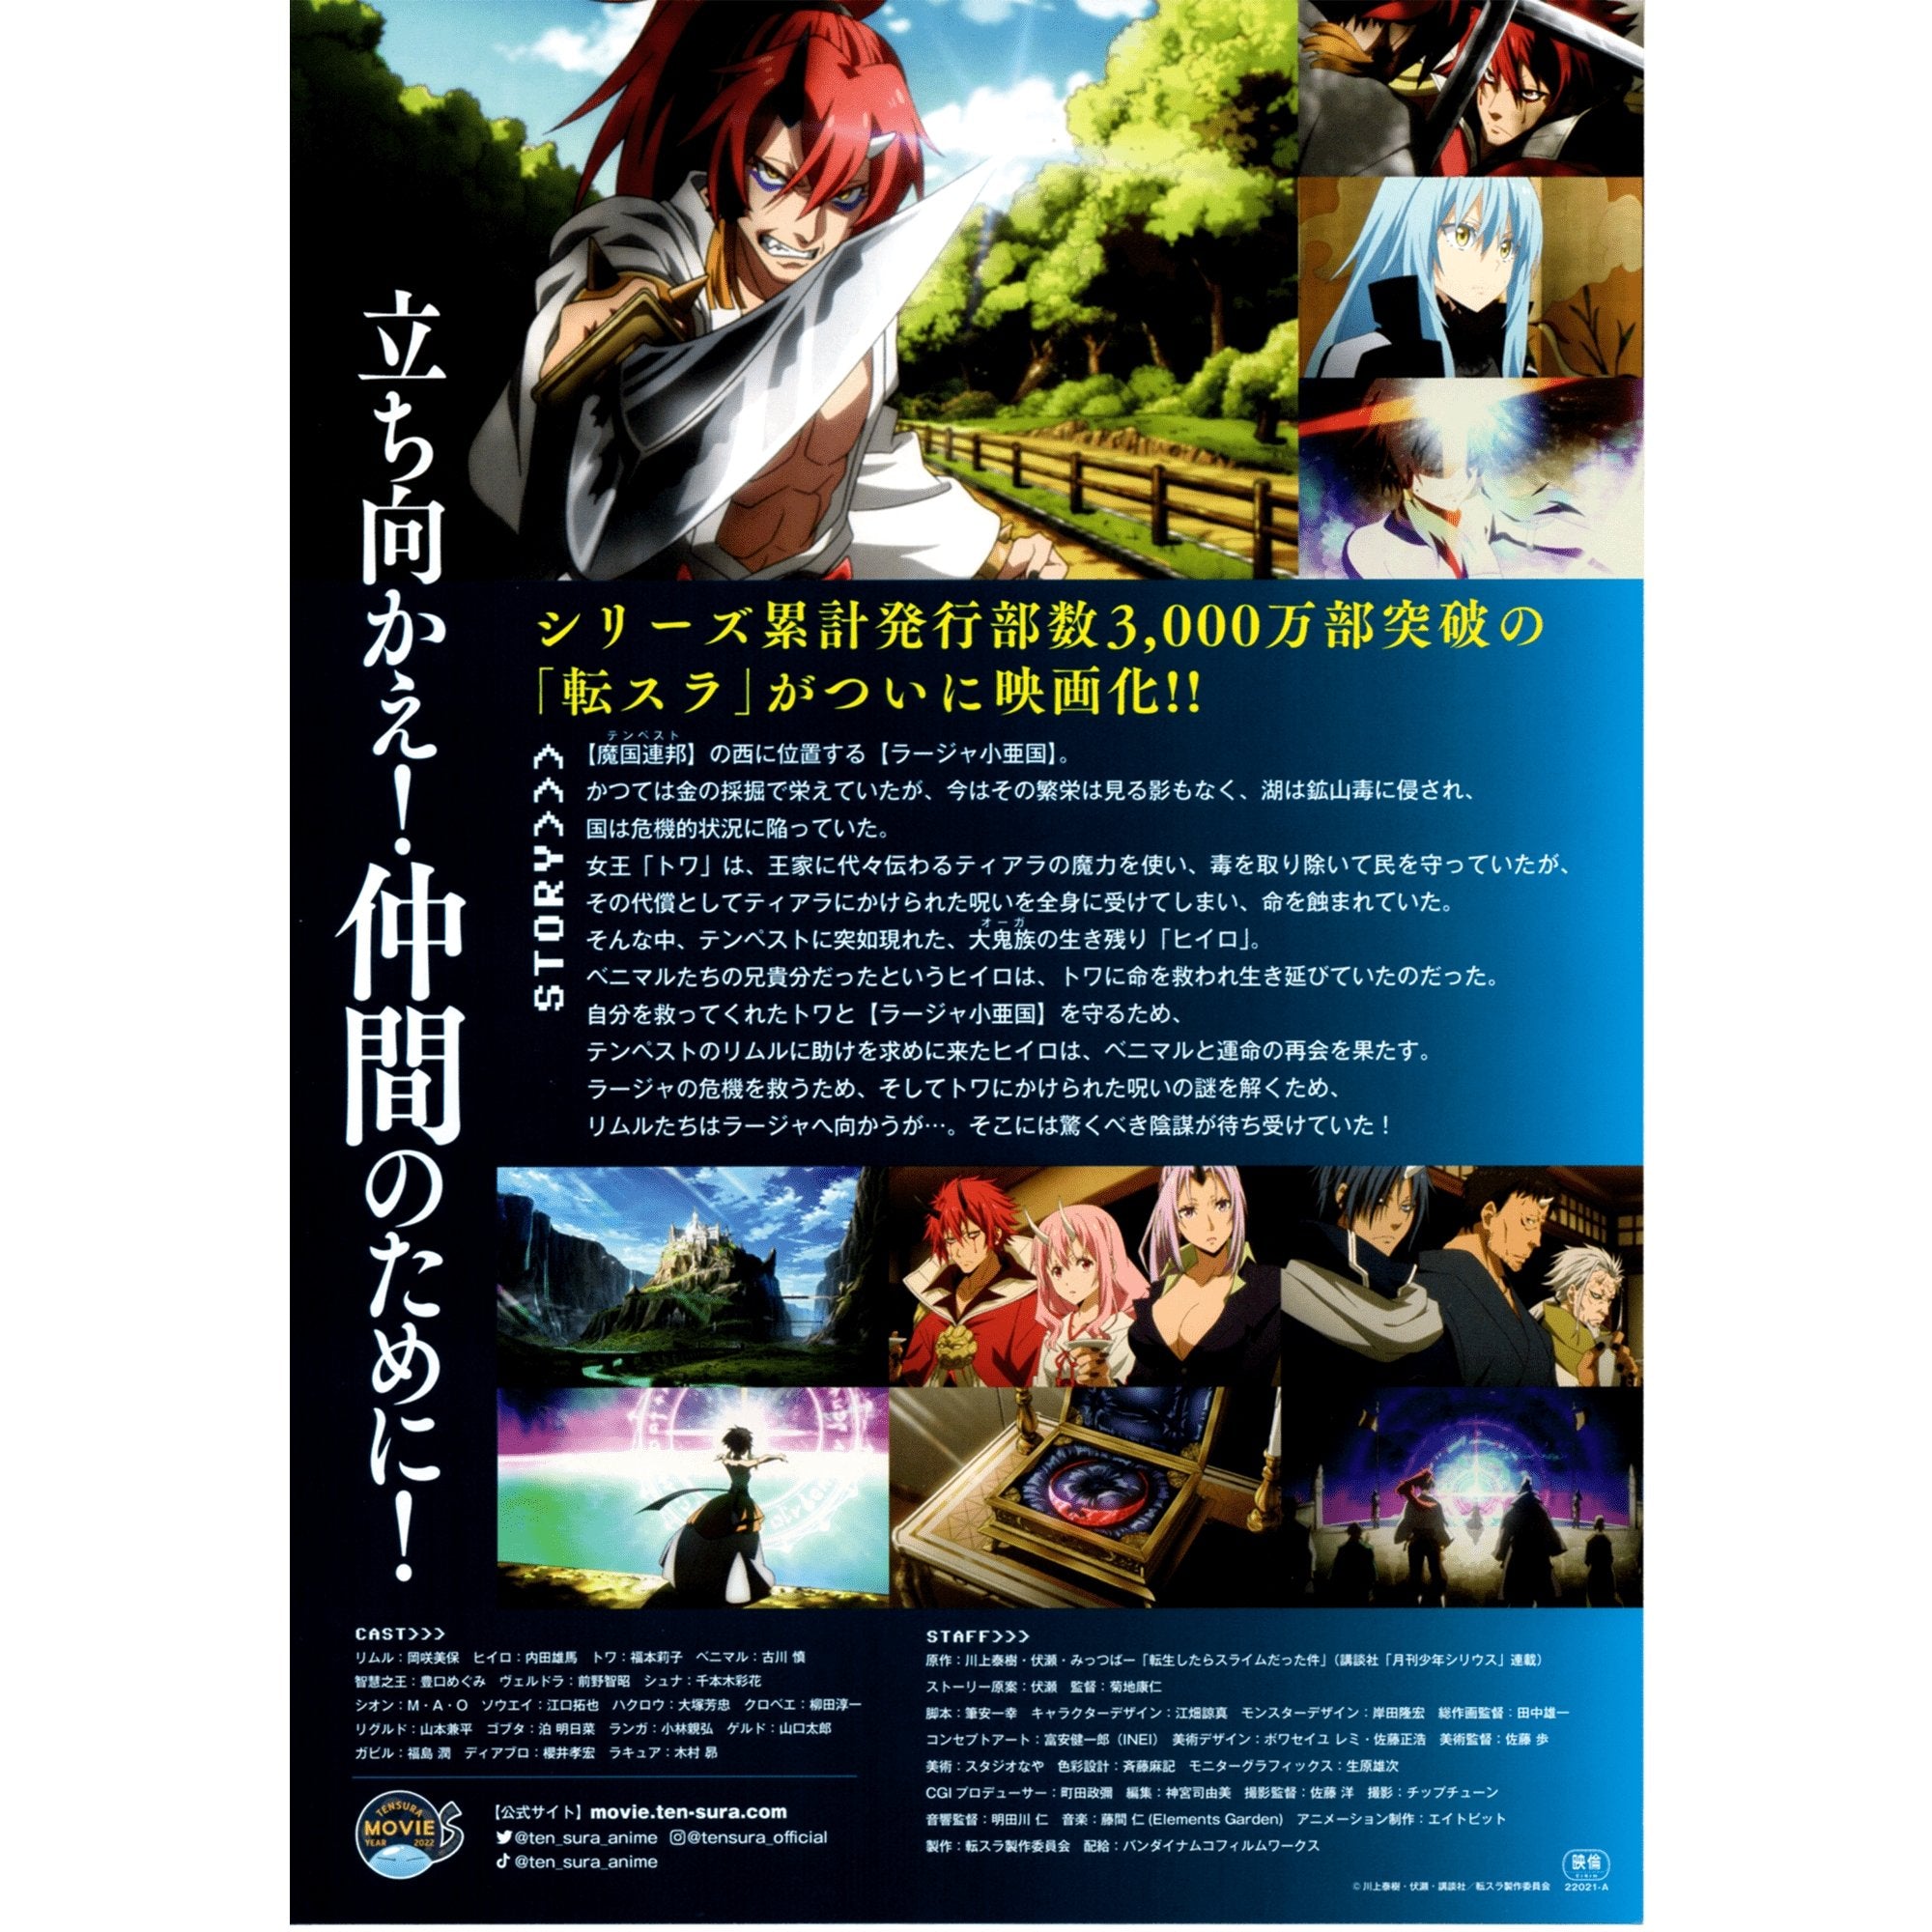 My Blog — Tensei shitara Slime Datta Ken Movie: Guren no